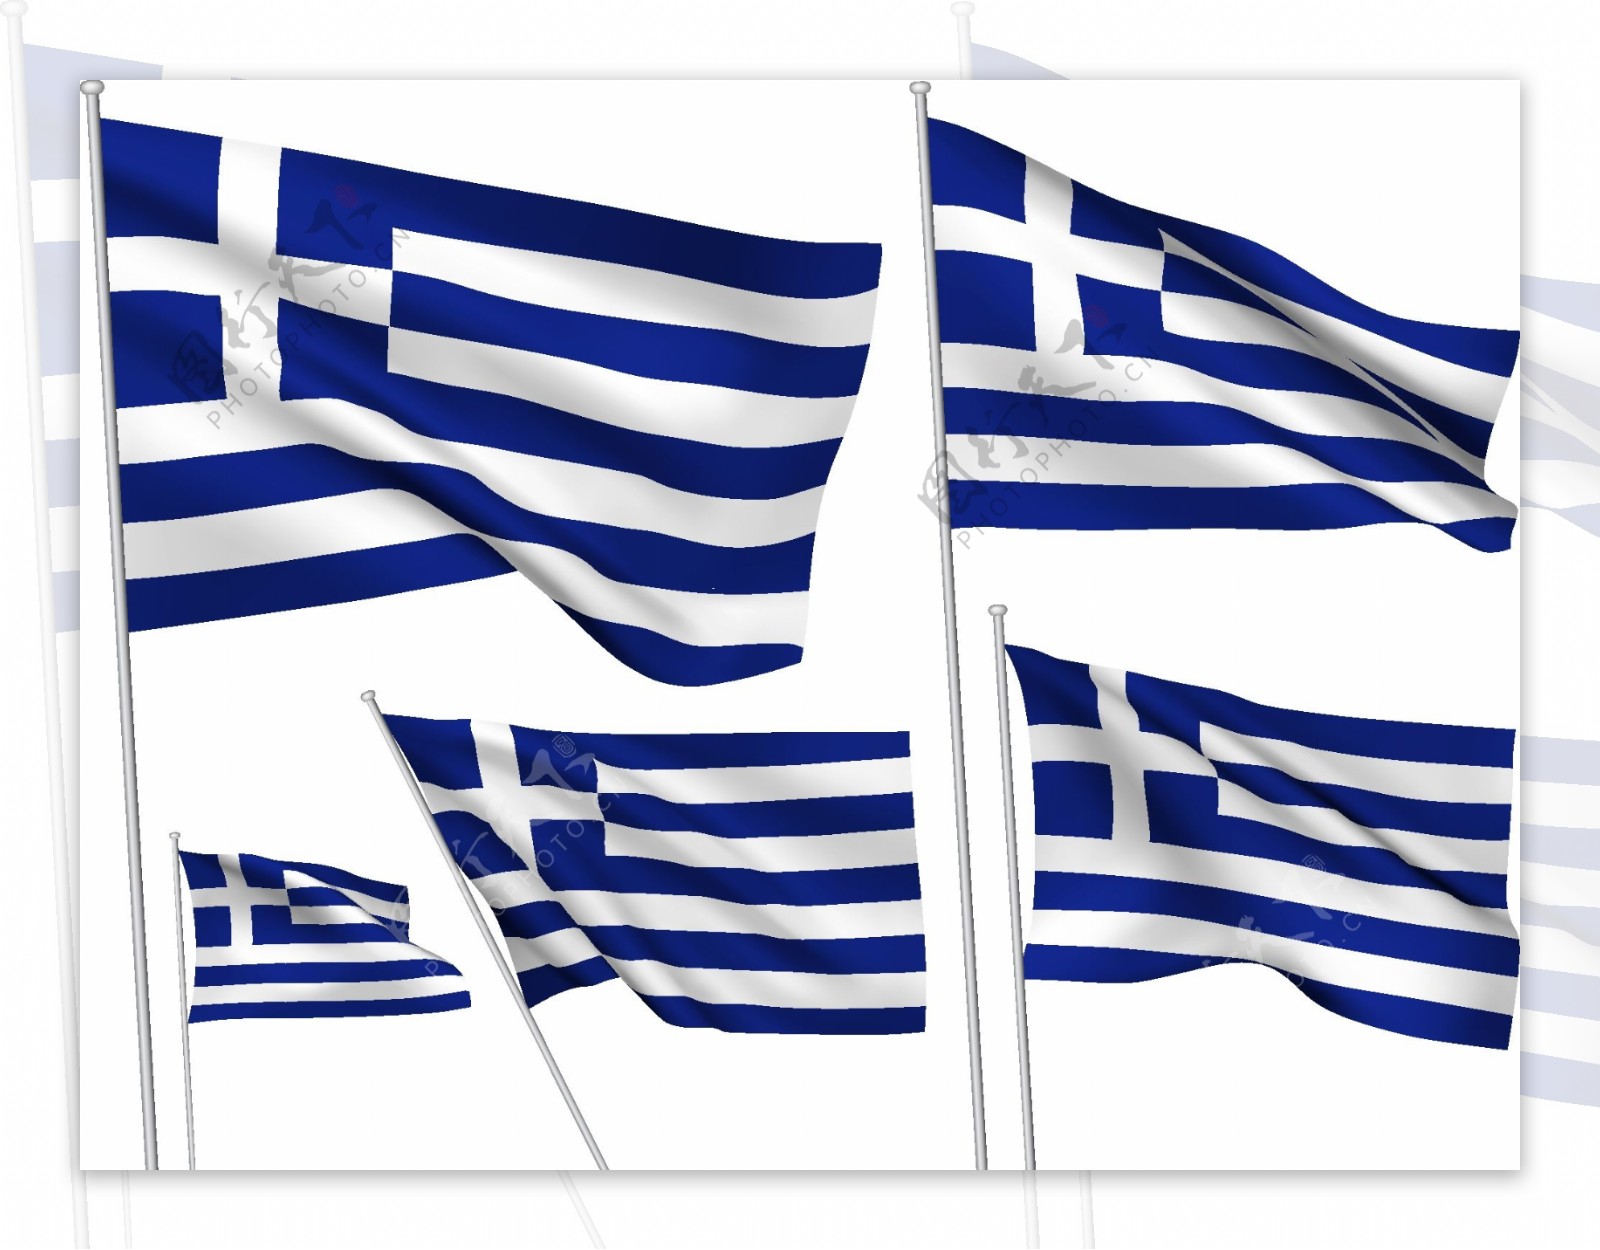 希腊国旗元素矢量